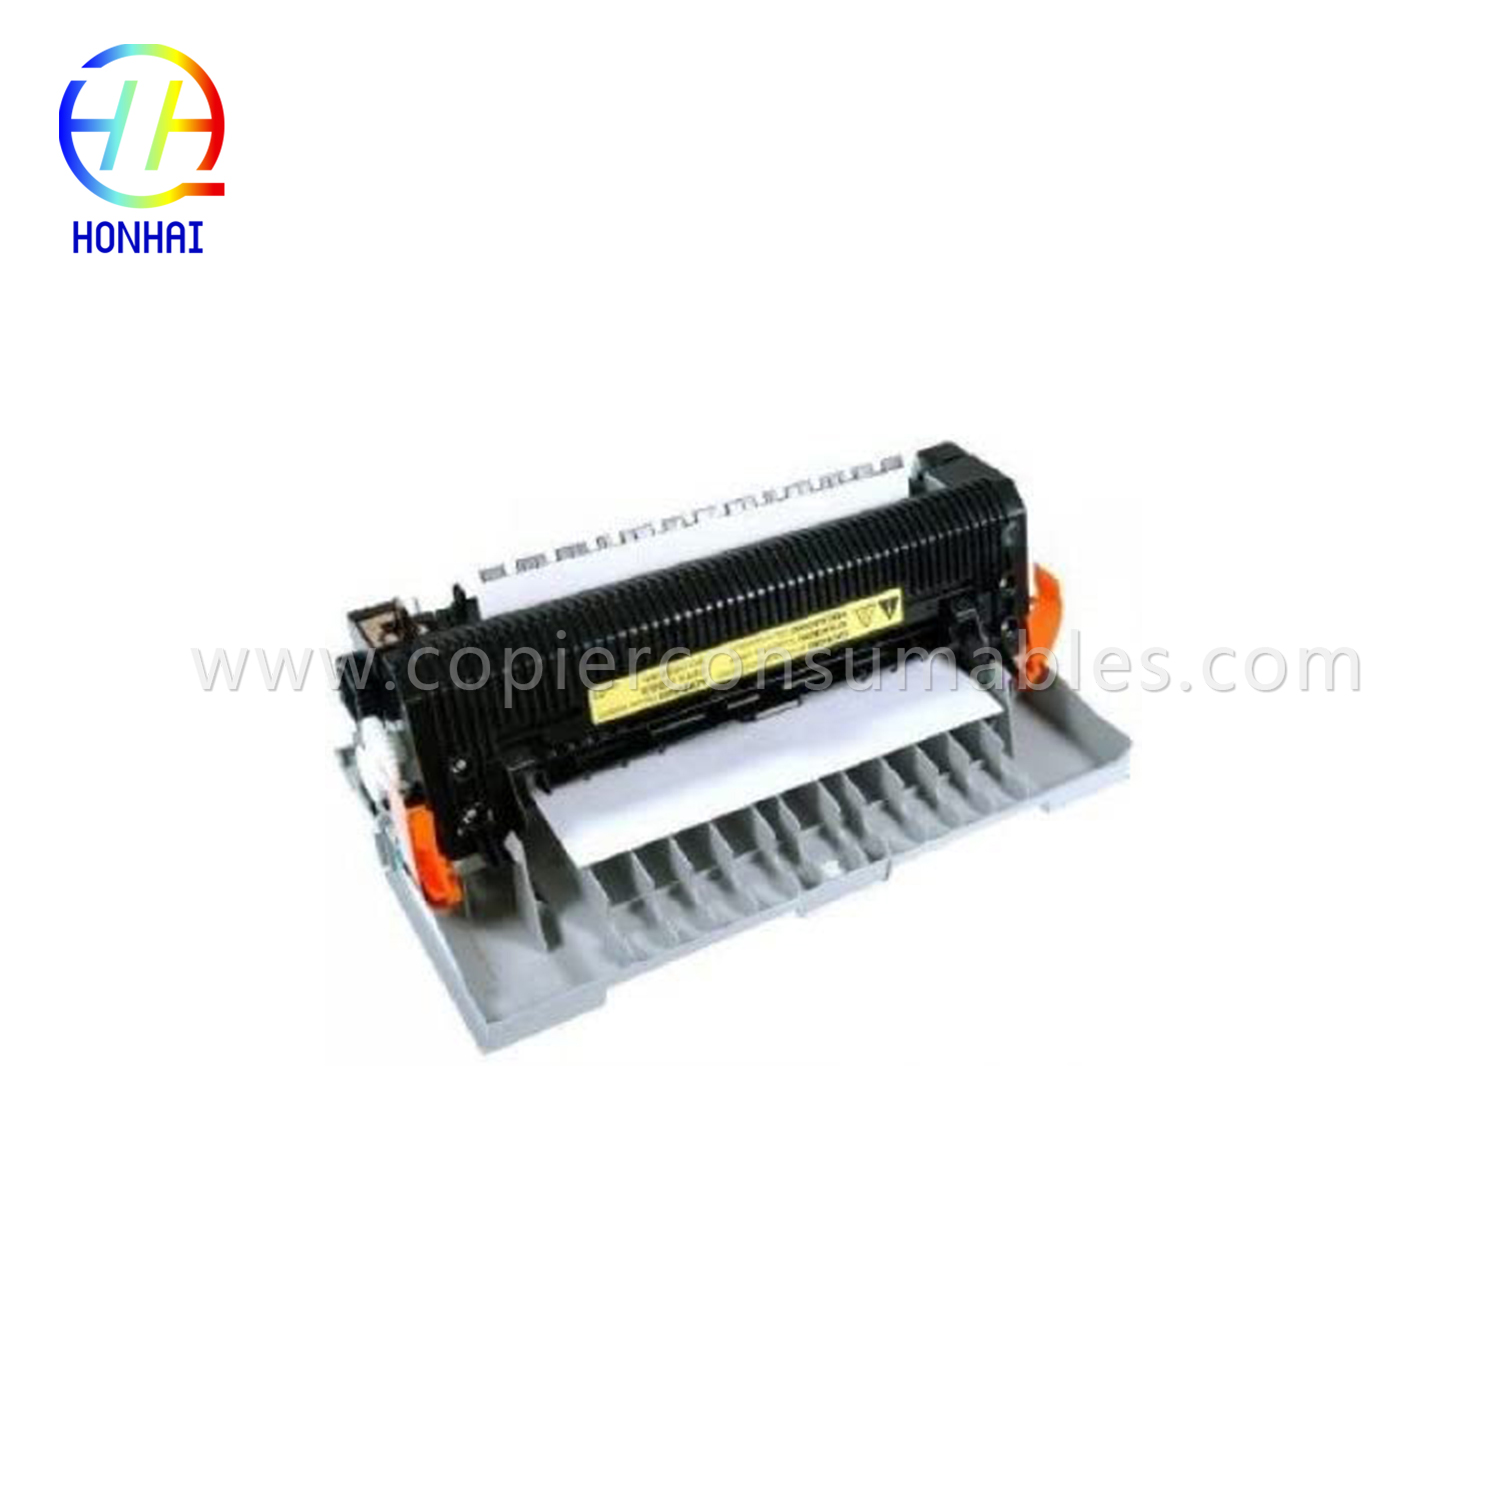 I-Fuser Assembly ye-HP Color Laserjet 2820 2830 2840 (RG5-7602-070CN RG5-7602-000CN)